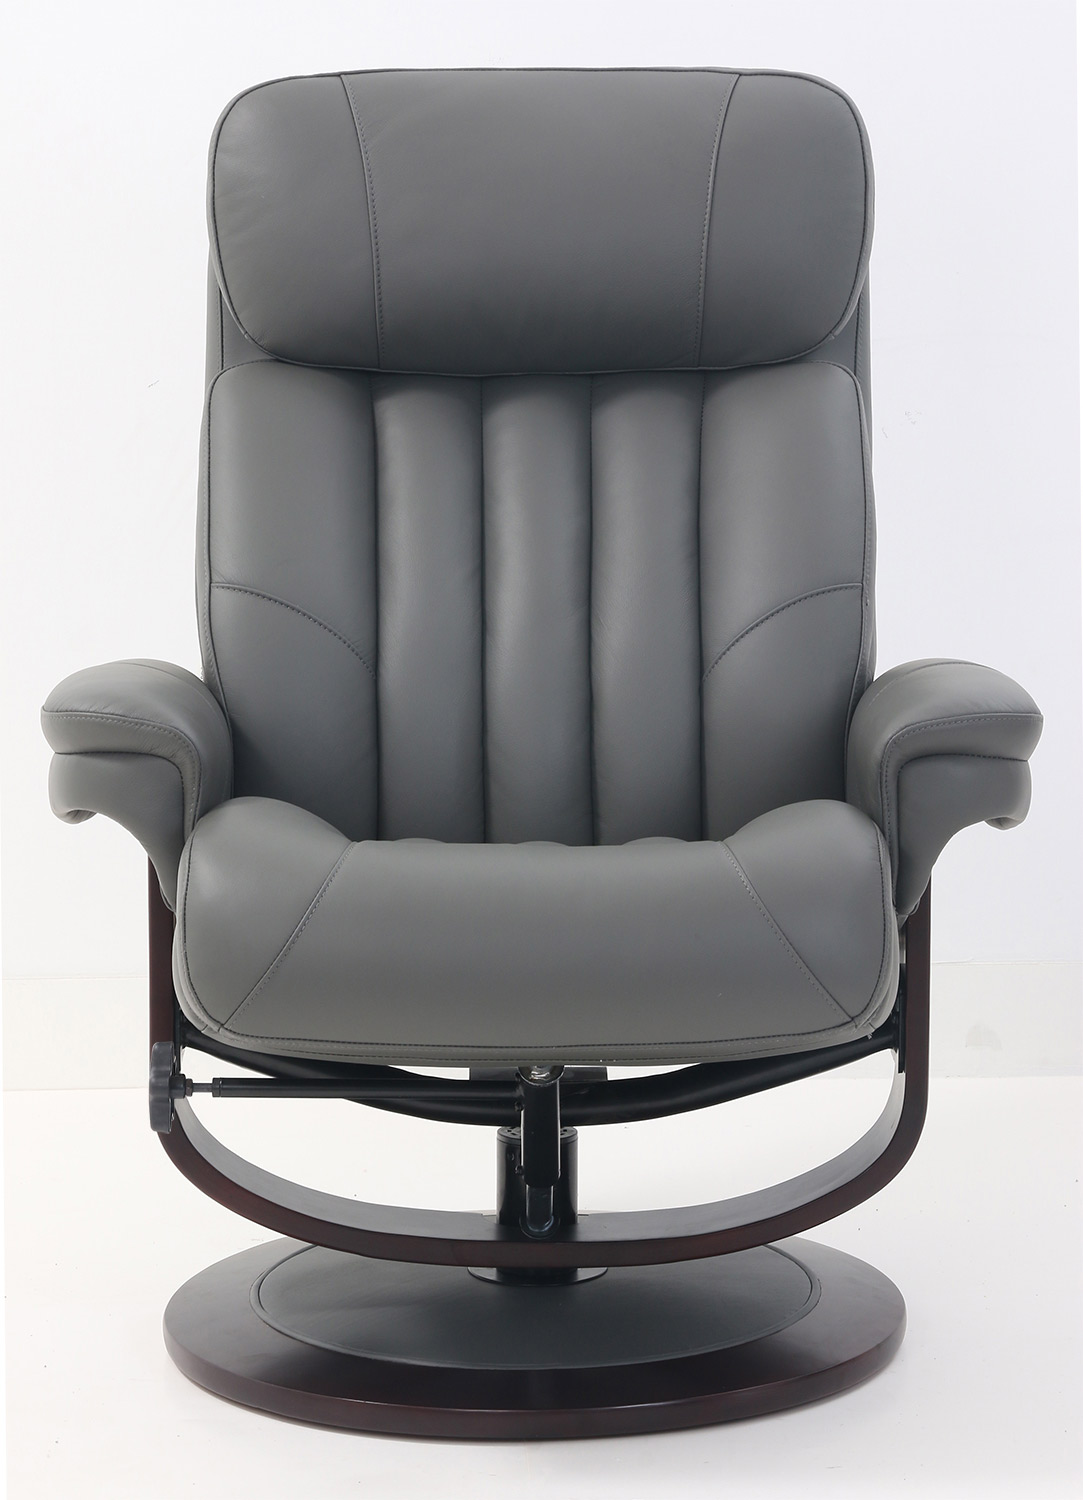 Barcalounger Oakleigh Pedestal Recliner Chair and Ottoman - Marlene Gray/Leather match